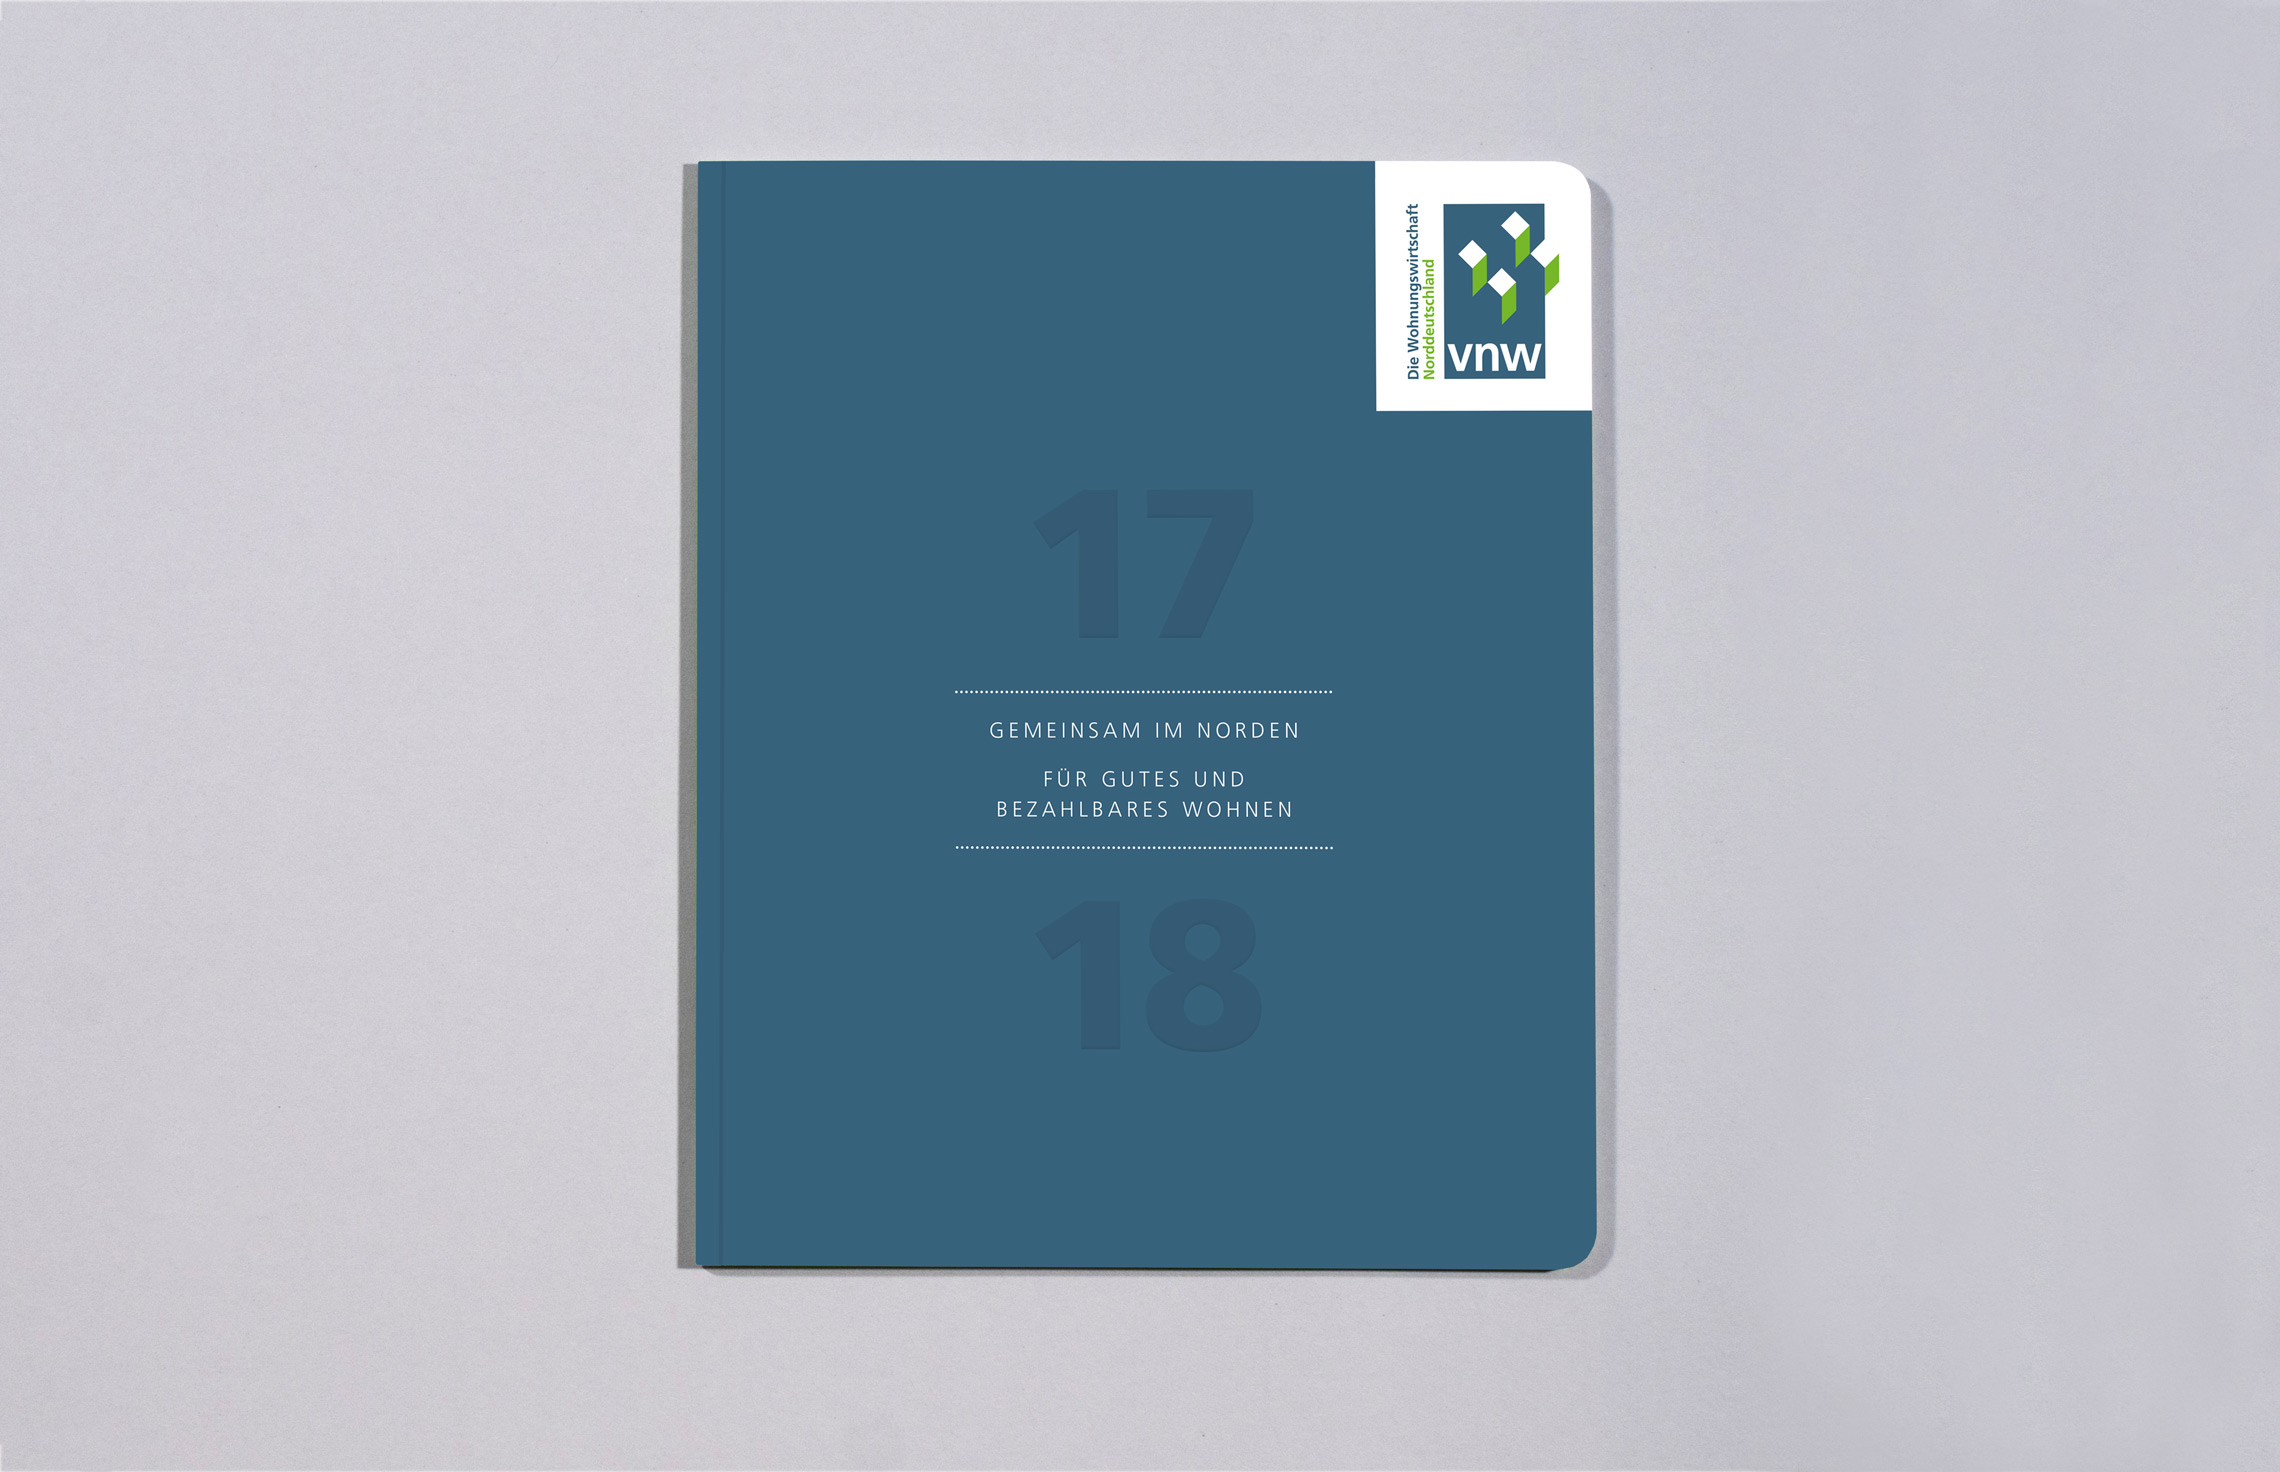 VNW Verband norddeutscher Wohnungsunternehmen, Titel vom Geschäftsbericht 2017/18, Annualreport, Typographie, Veredelung